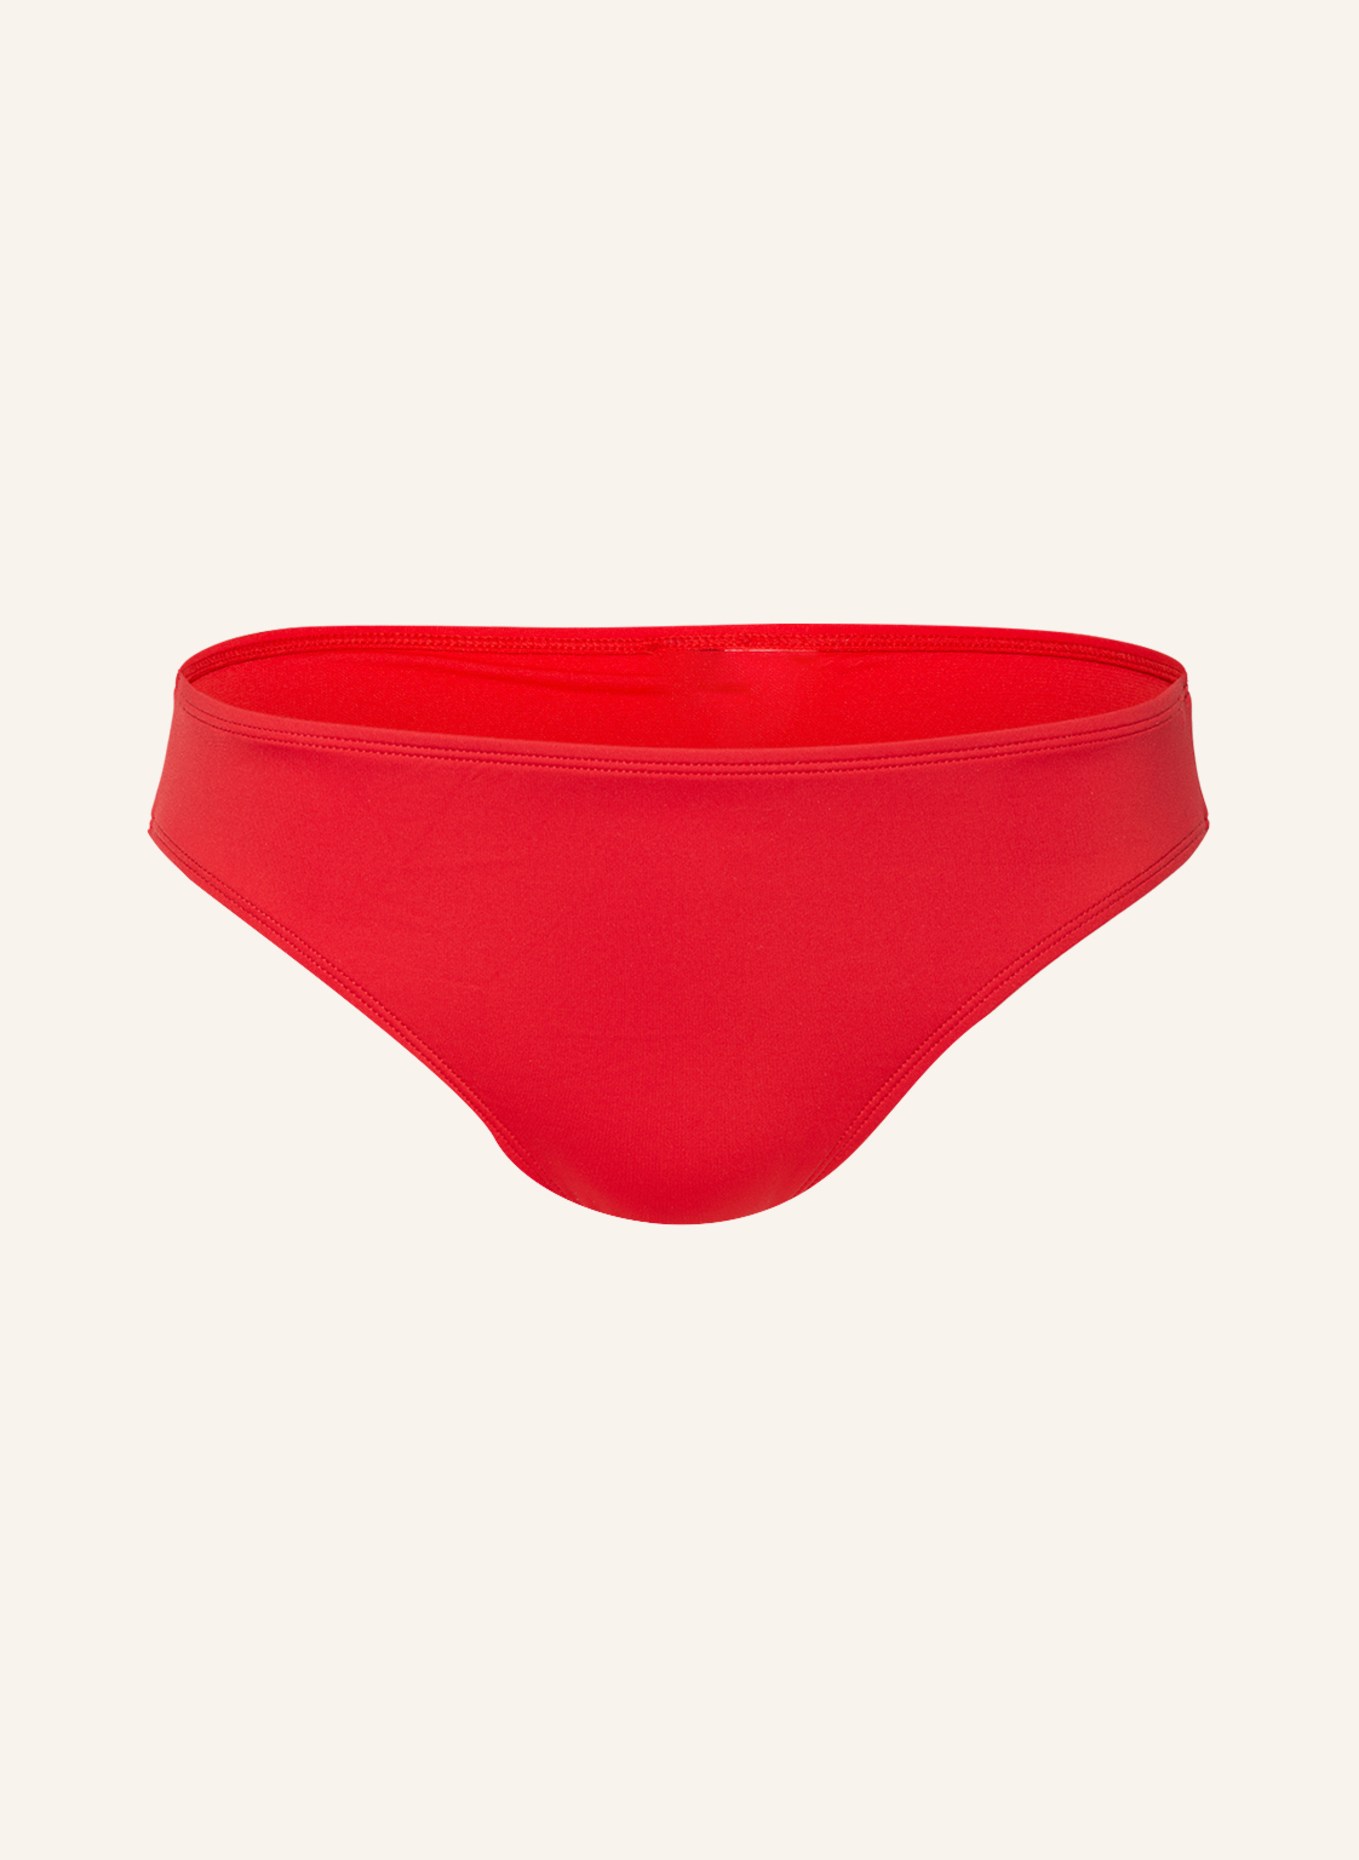 LAUREN RALPH LAUREN Basic bikini bottoms, Color: RED (Image 1)